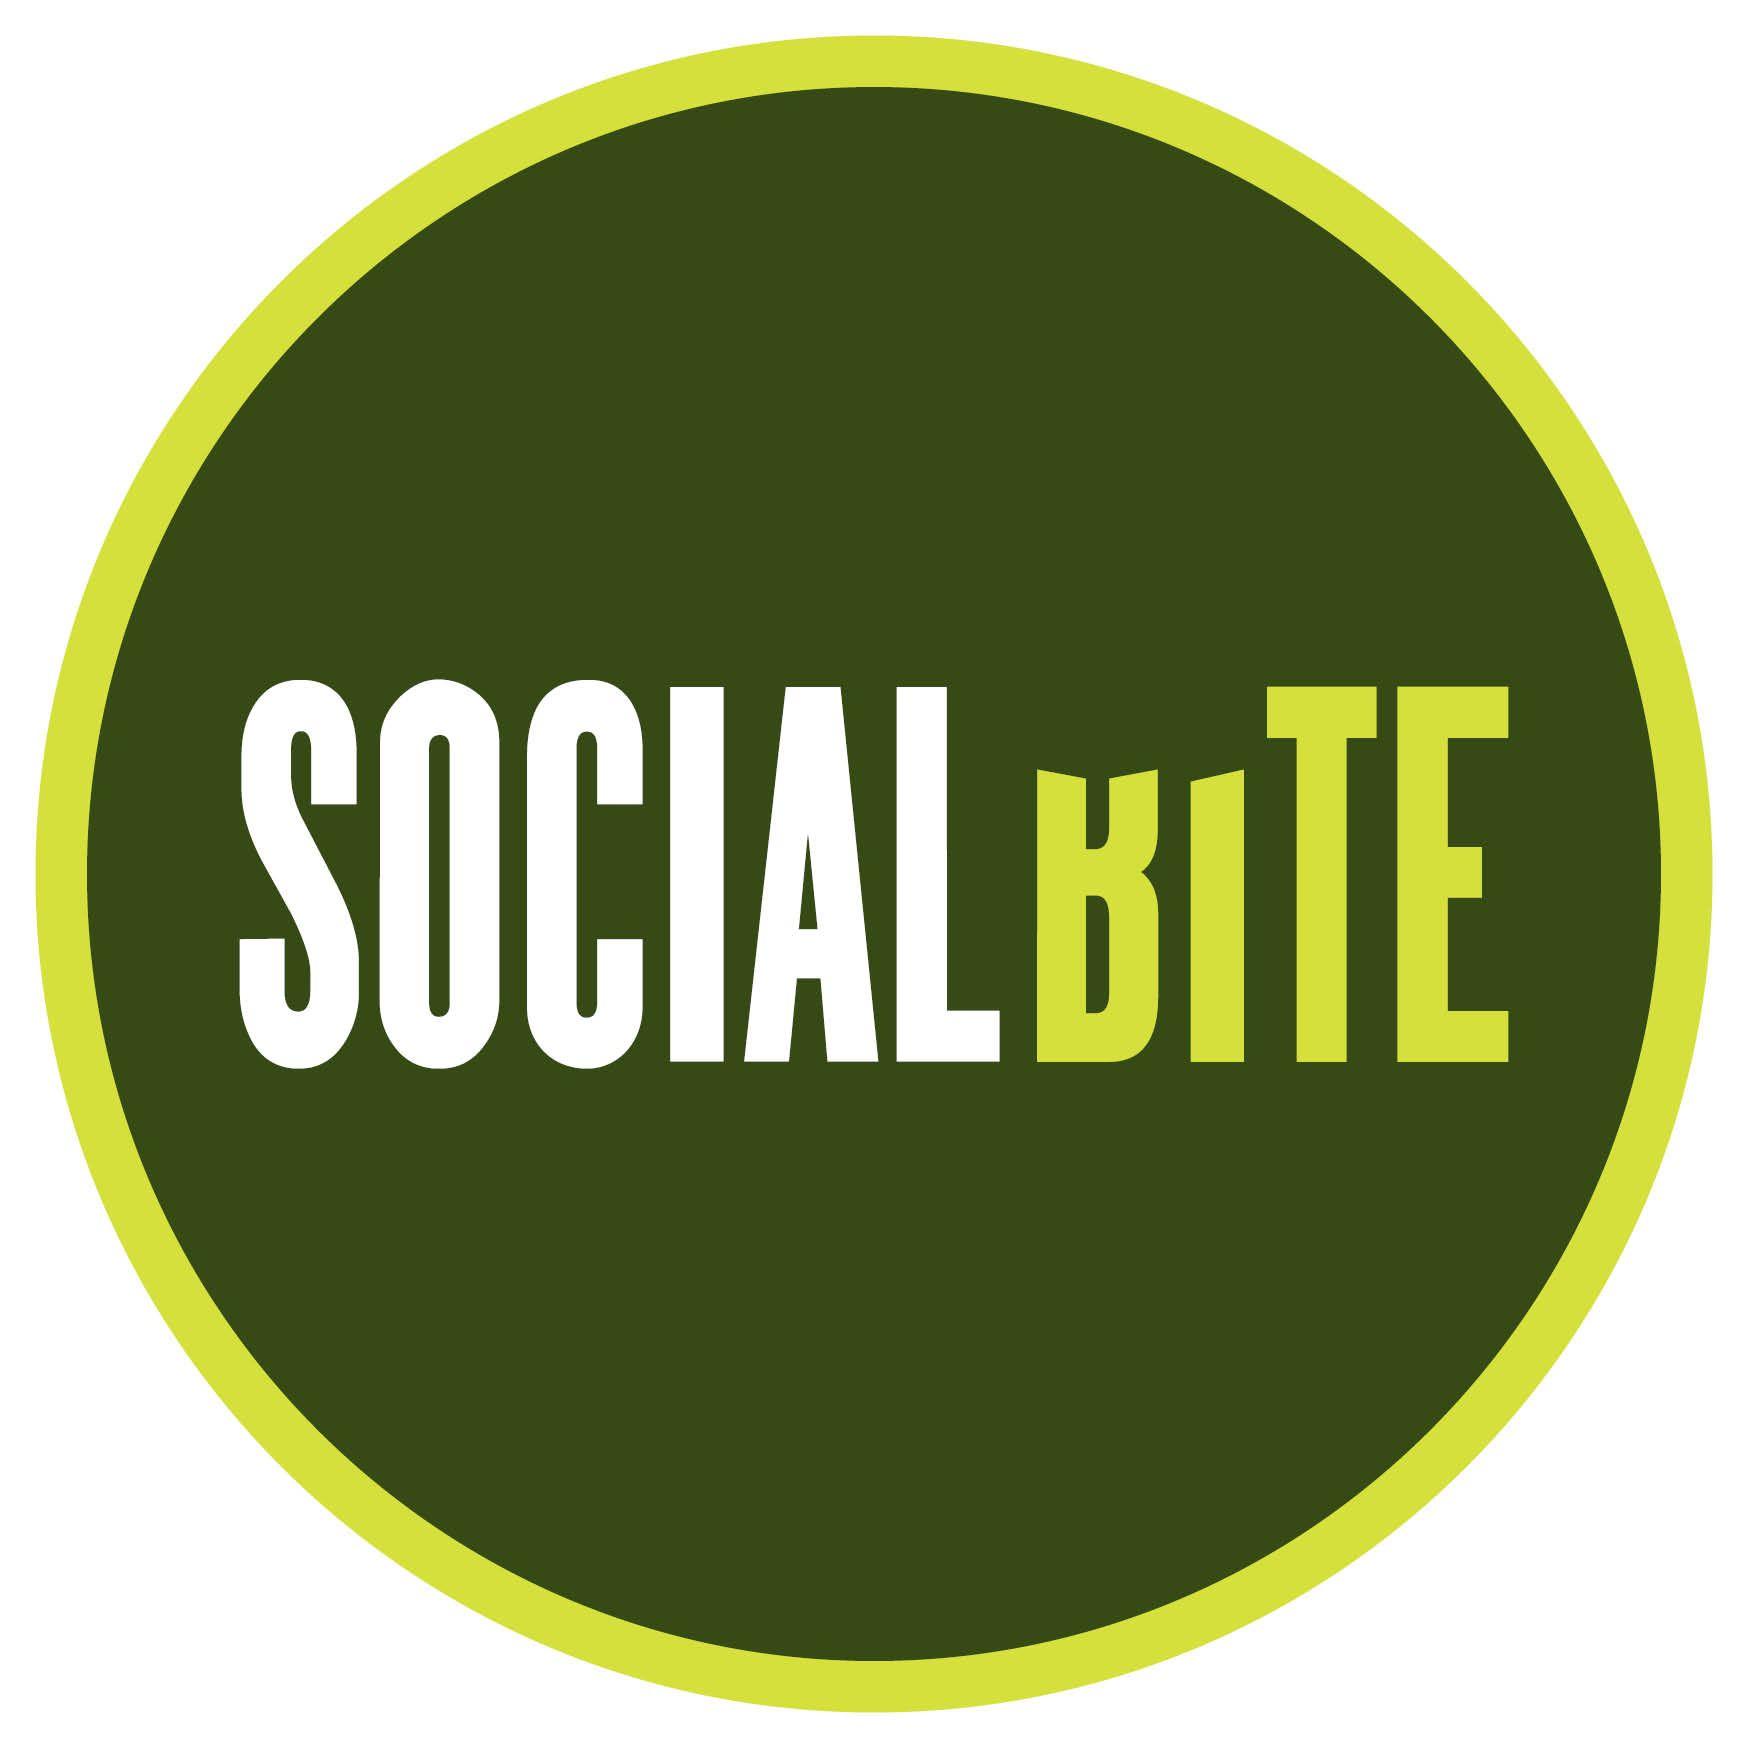 Bite Logo - Social bite logo - Cyrenians